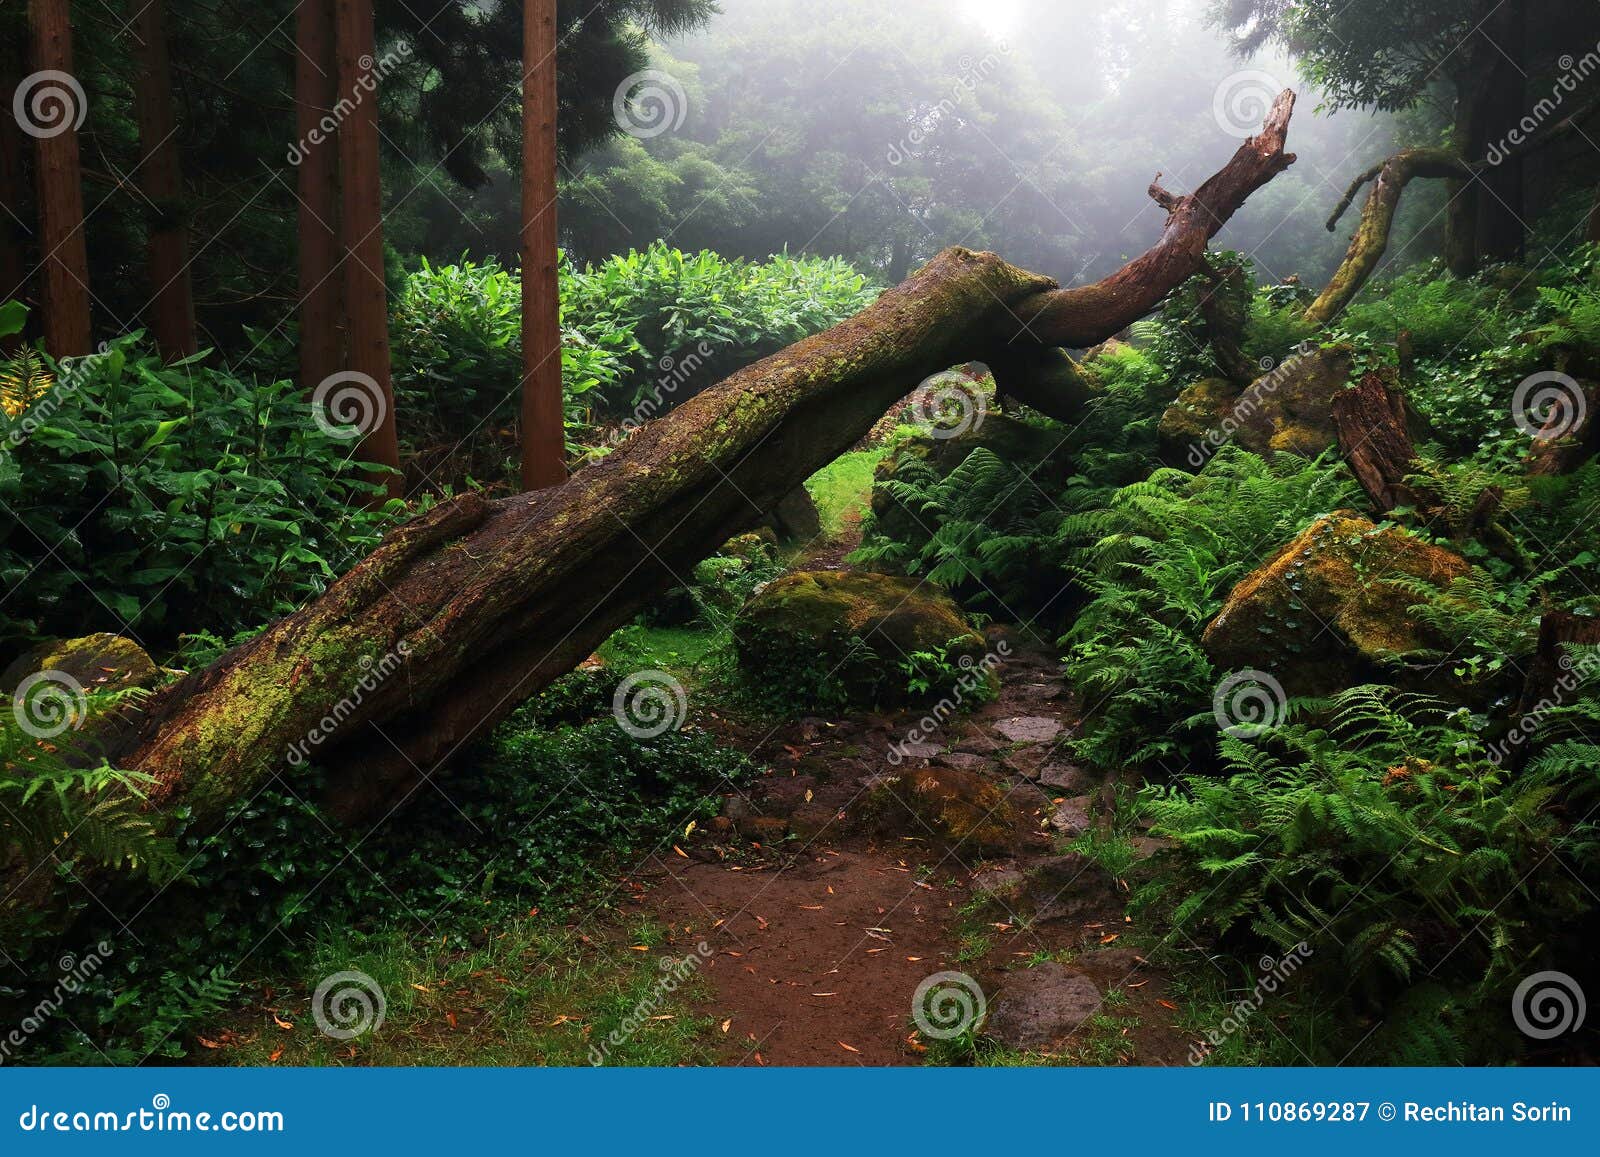 amazing subtropical deep forest close to poÃÂ§o da alagoinha in a foggy day